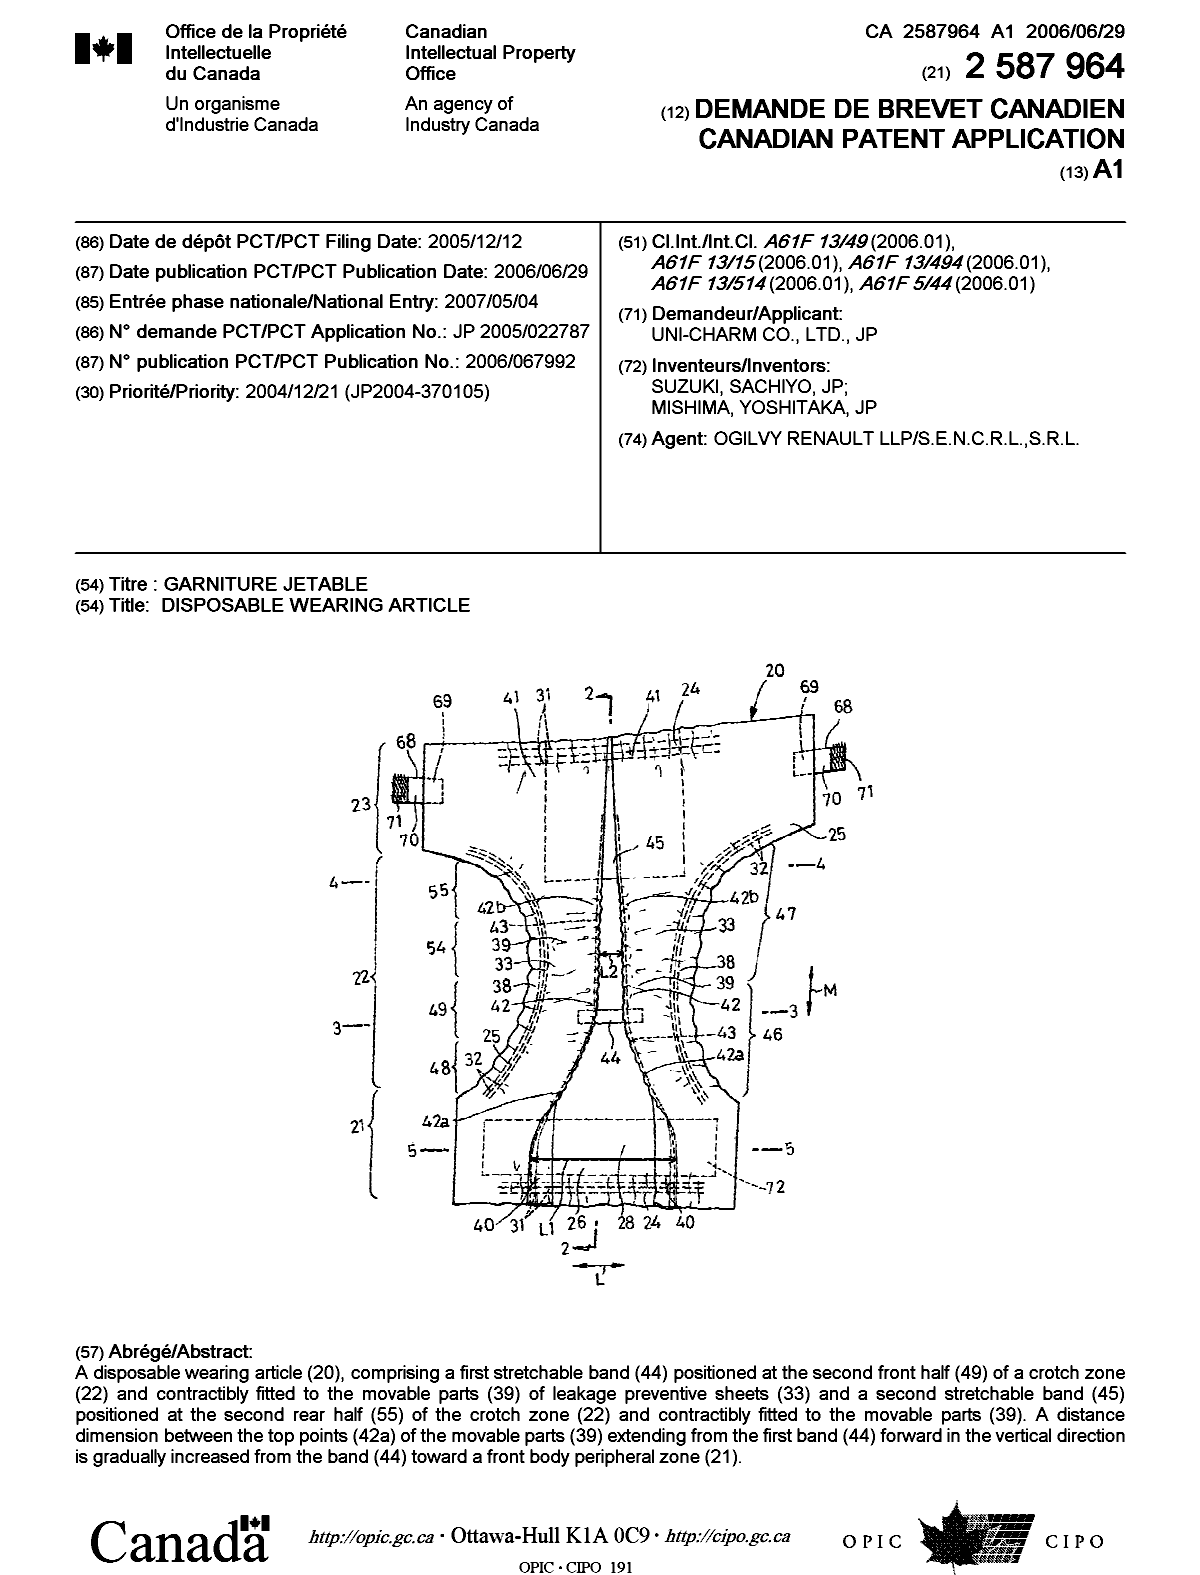 Document de brevet canadien 2587964. Page couverture 20070724. Image 1 de 1